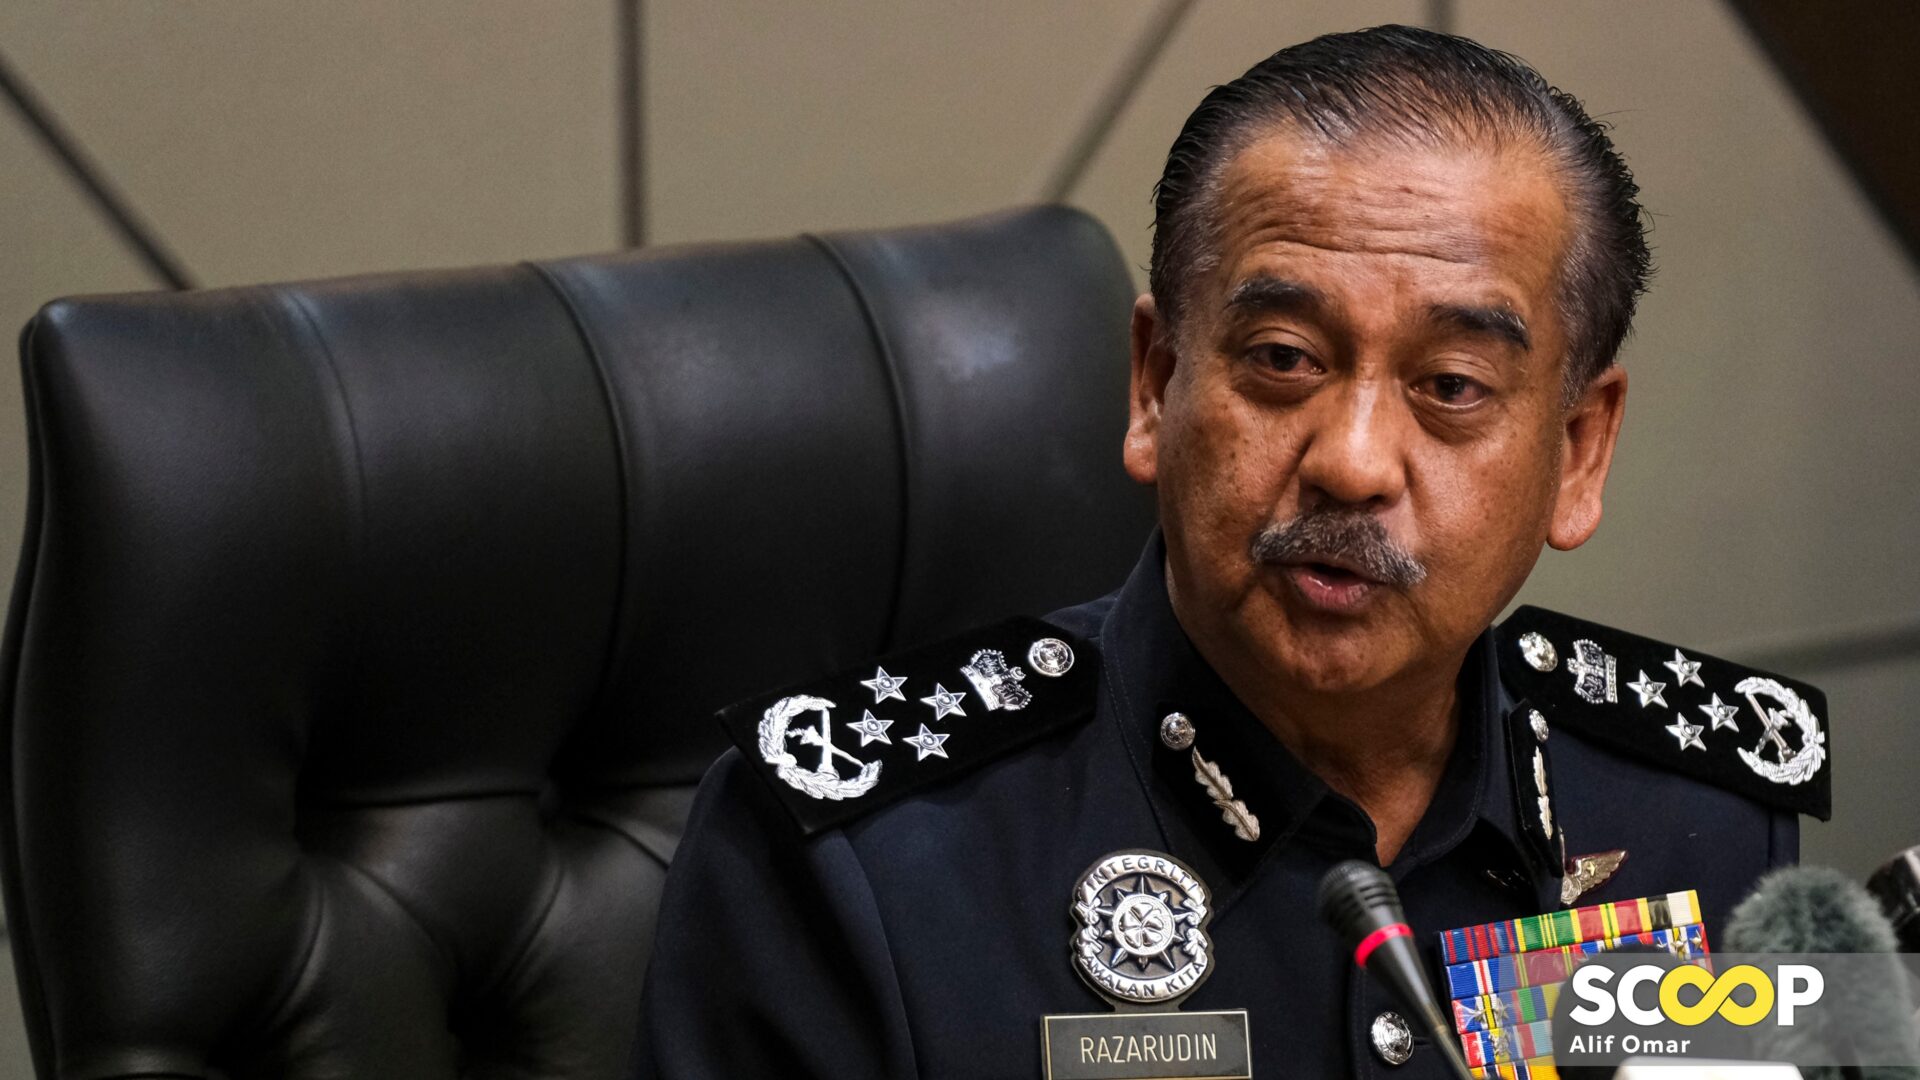 Suspek serang Balai Polis Ulu Tiram bukan anggota JI, bapa ada dalam data PDRM